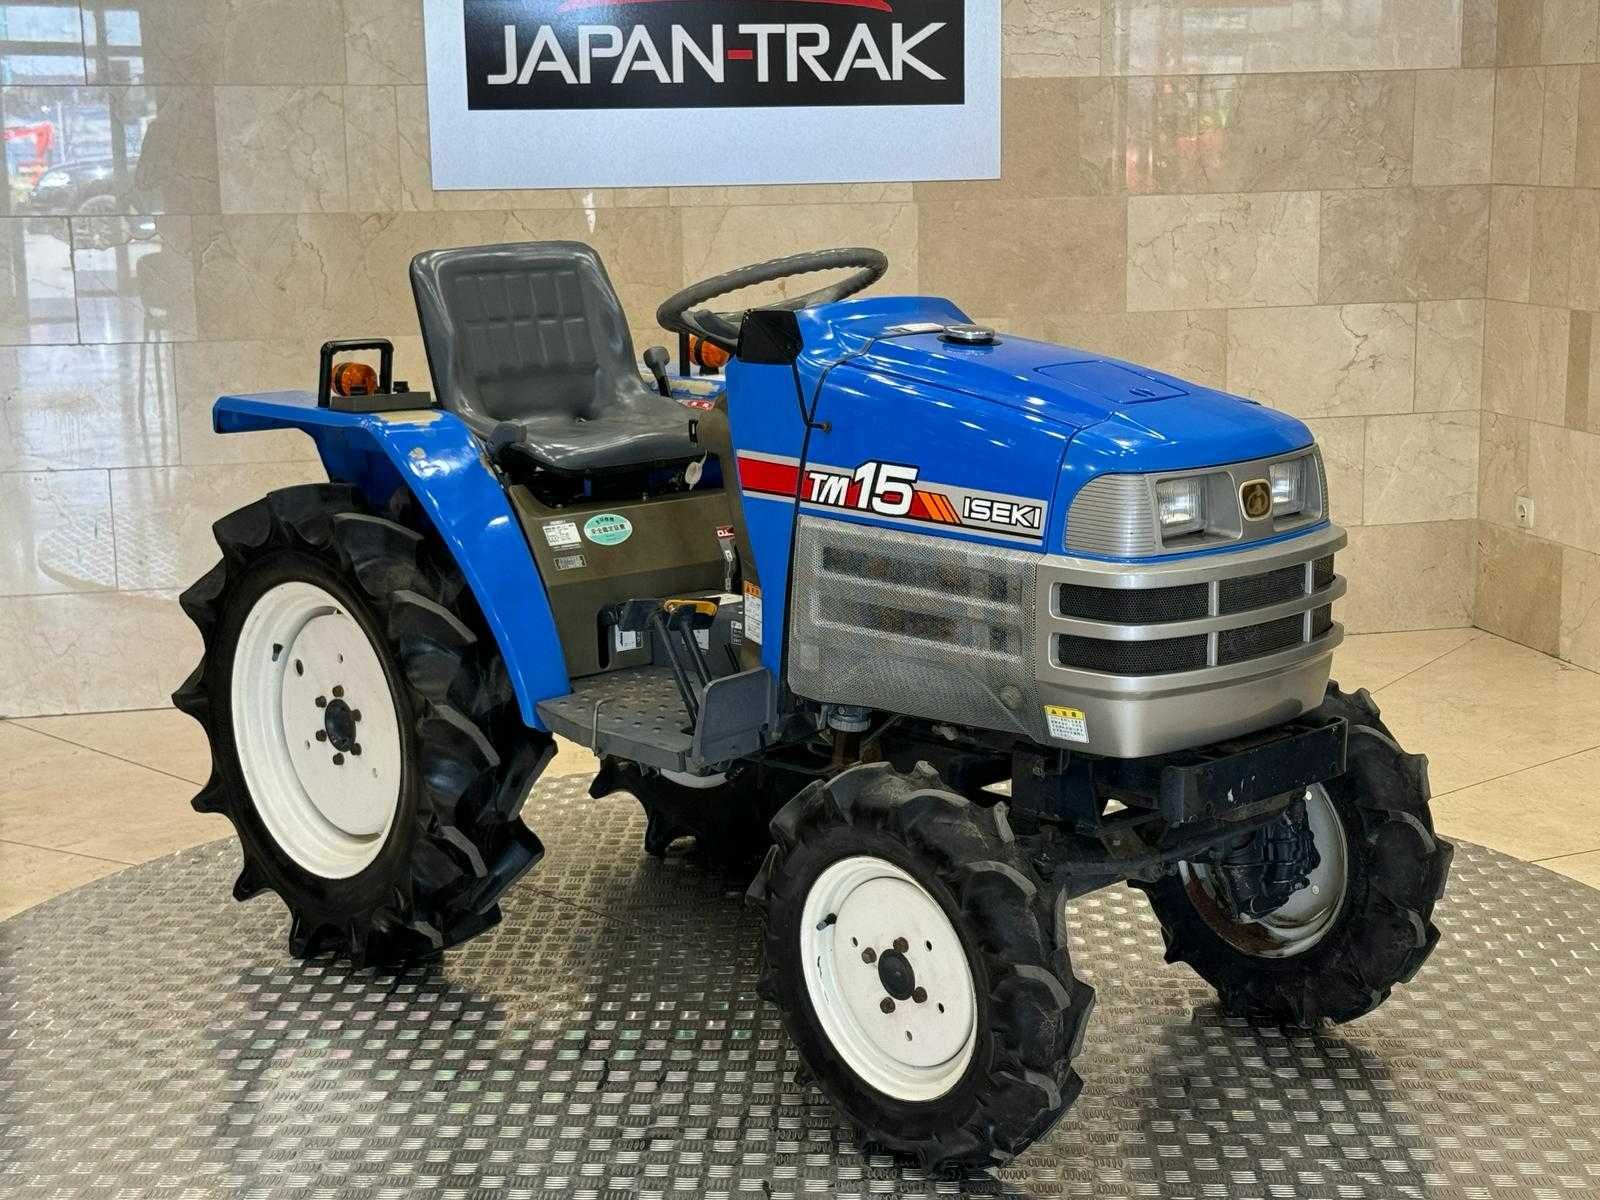 Iseki TM-15,Gwarancja traktorek ogrodowy,ciągniczek. Napęd 4x4